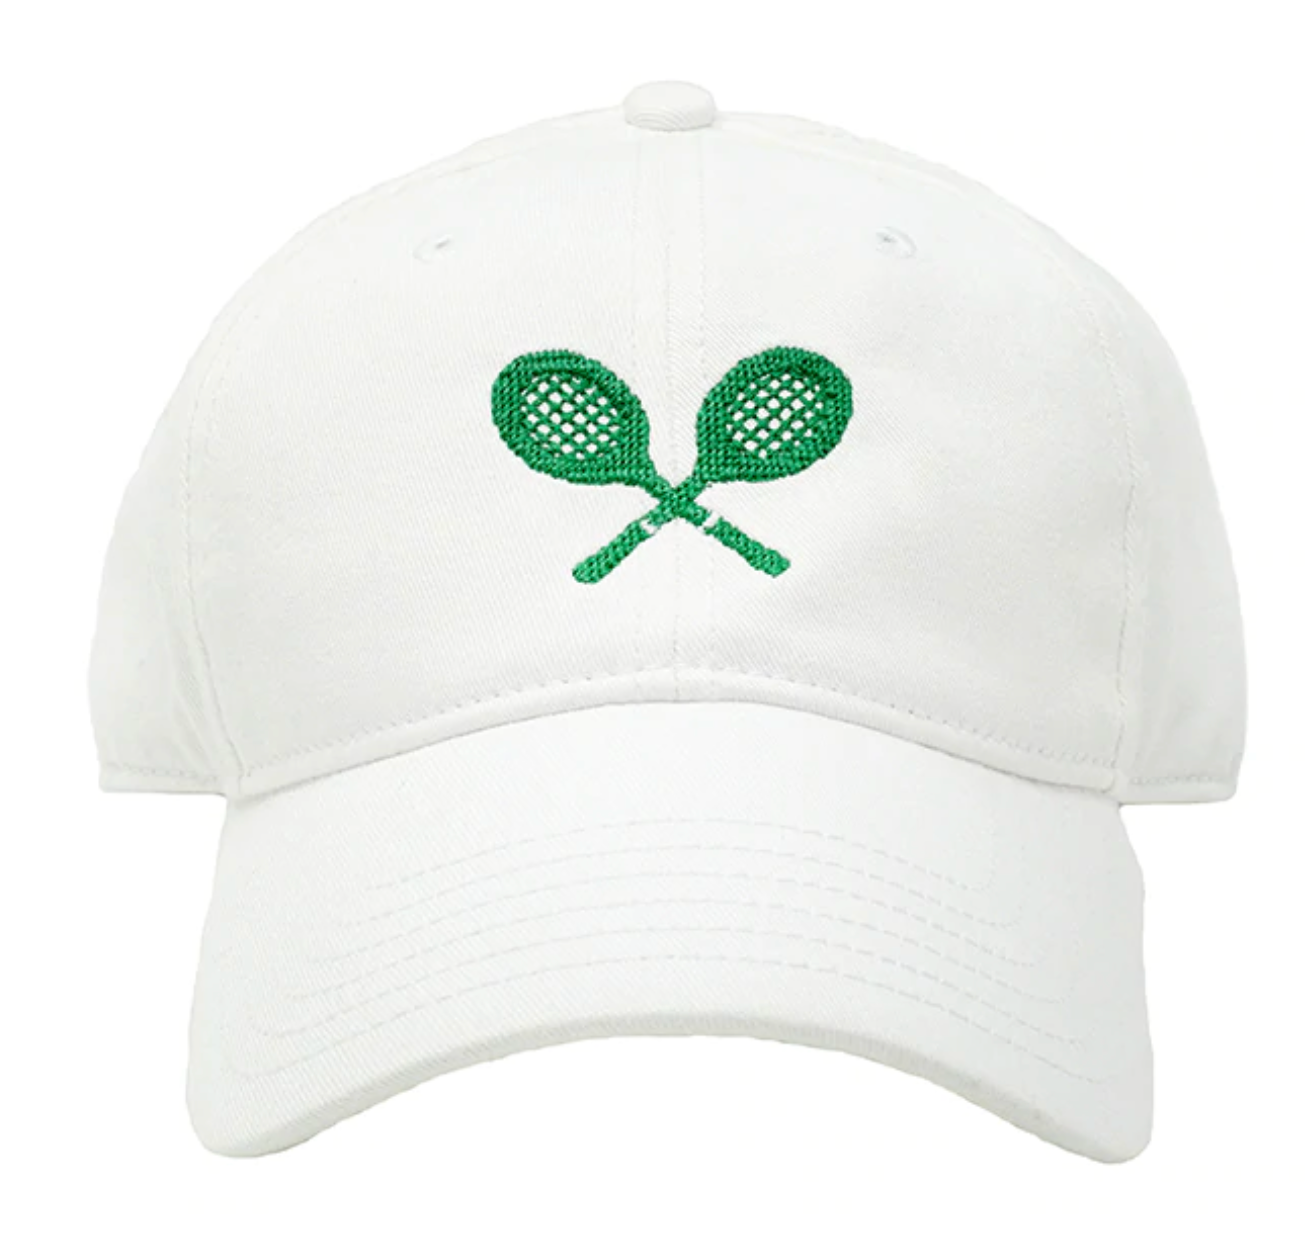 HL Kids Hat-Tennis Racquets on White - Mumzie's Children